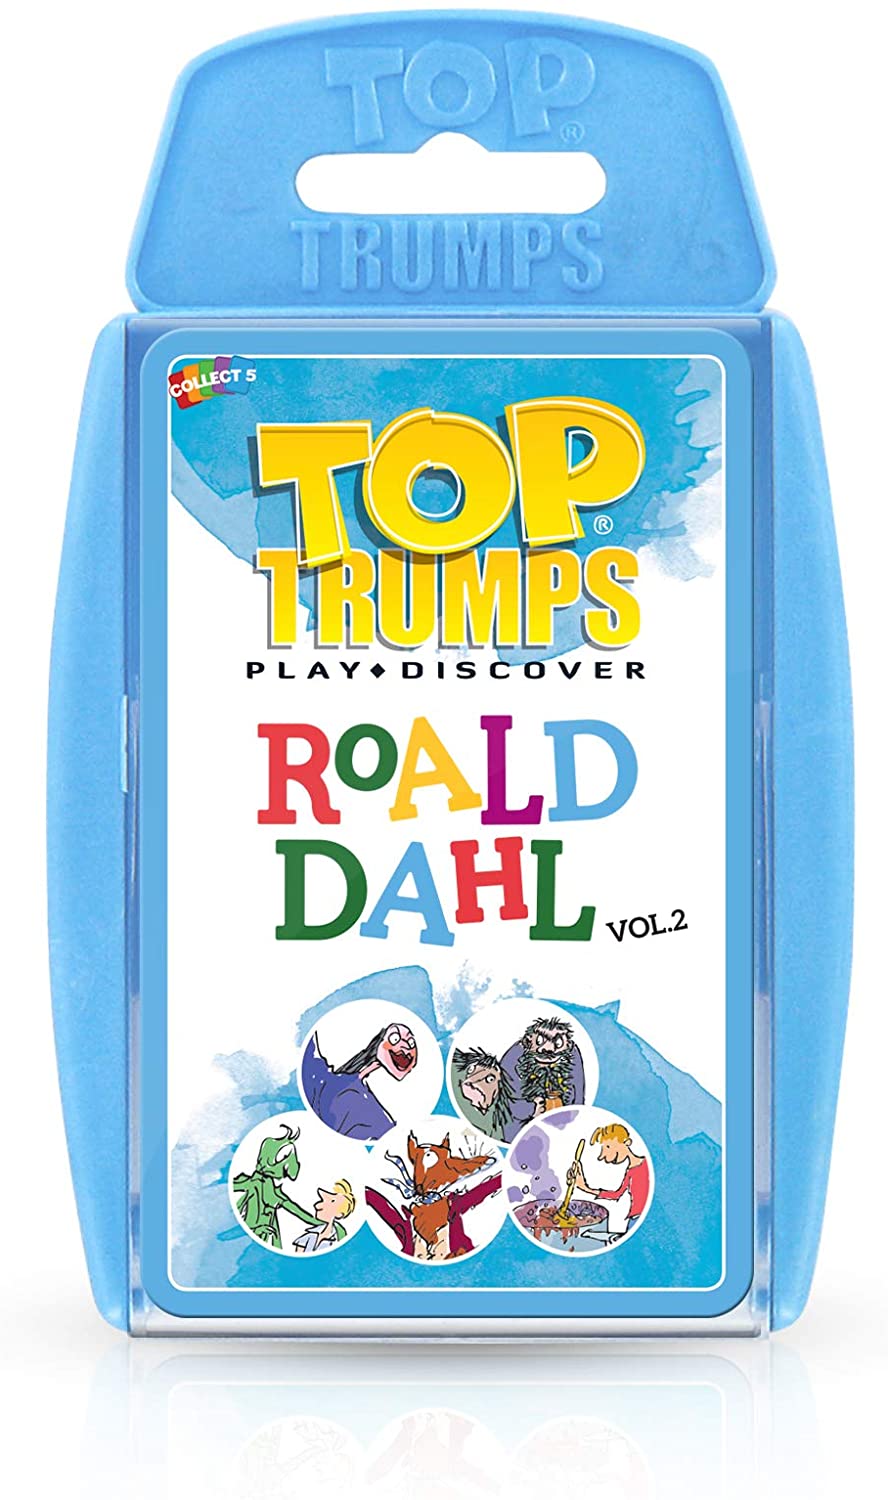 Top Trumps Roald Dahl Vol 2